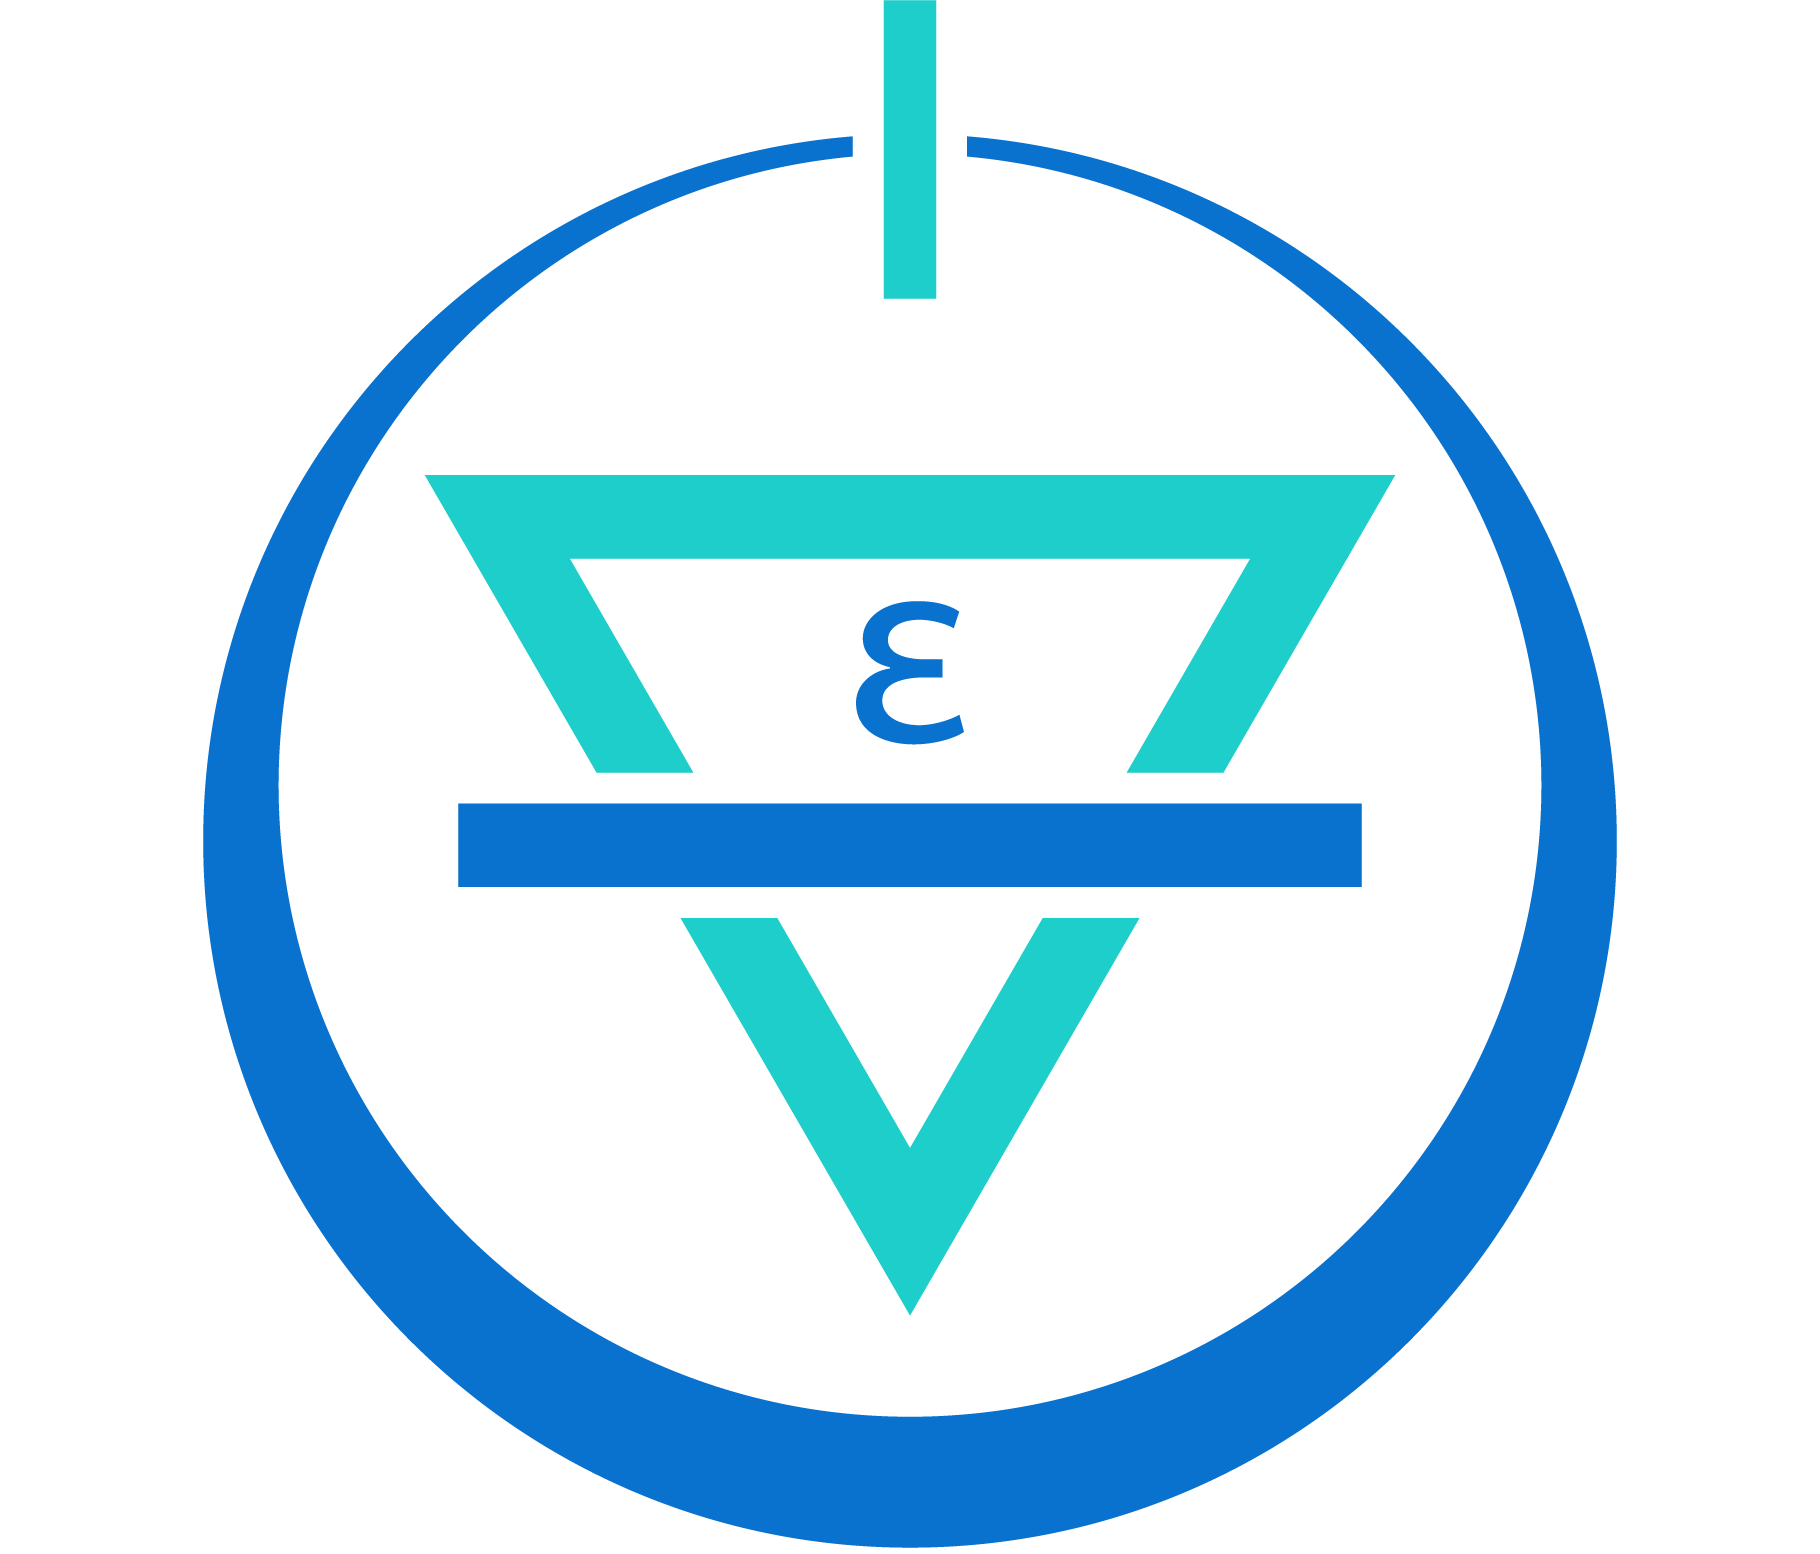 Terra Innovatum company logo